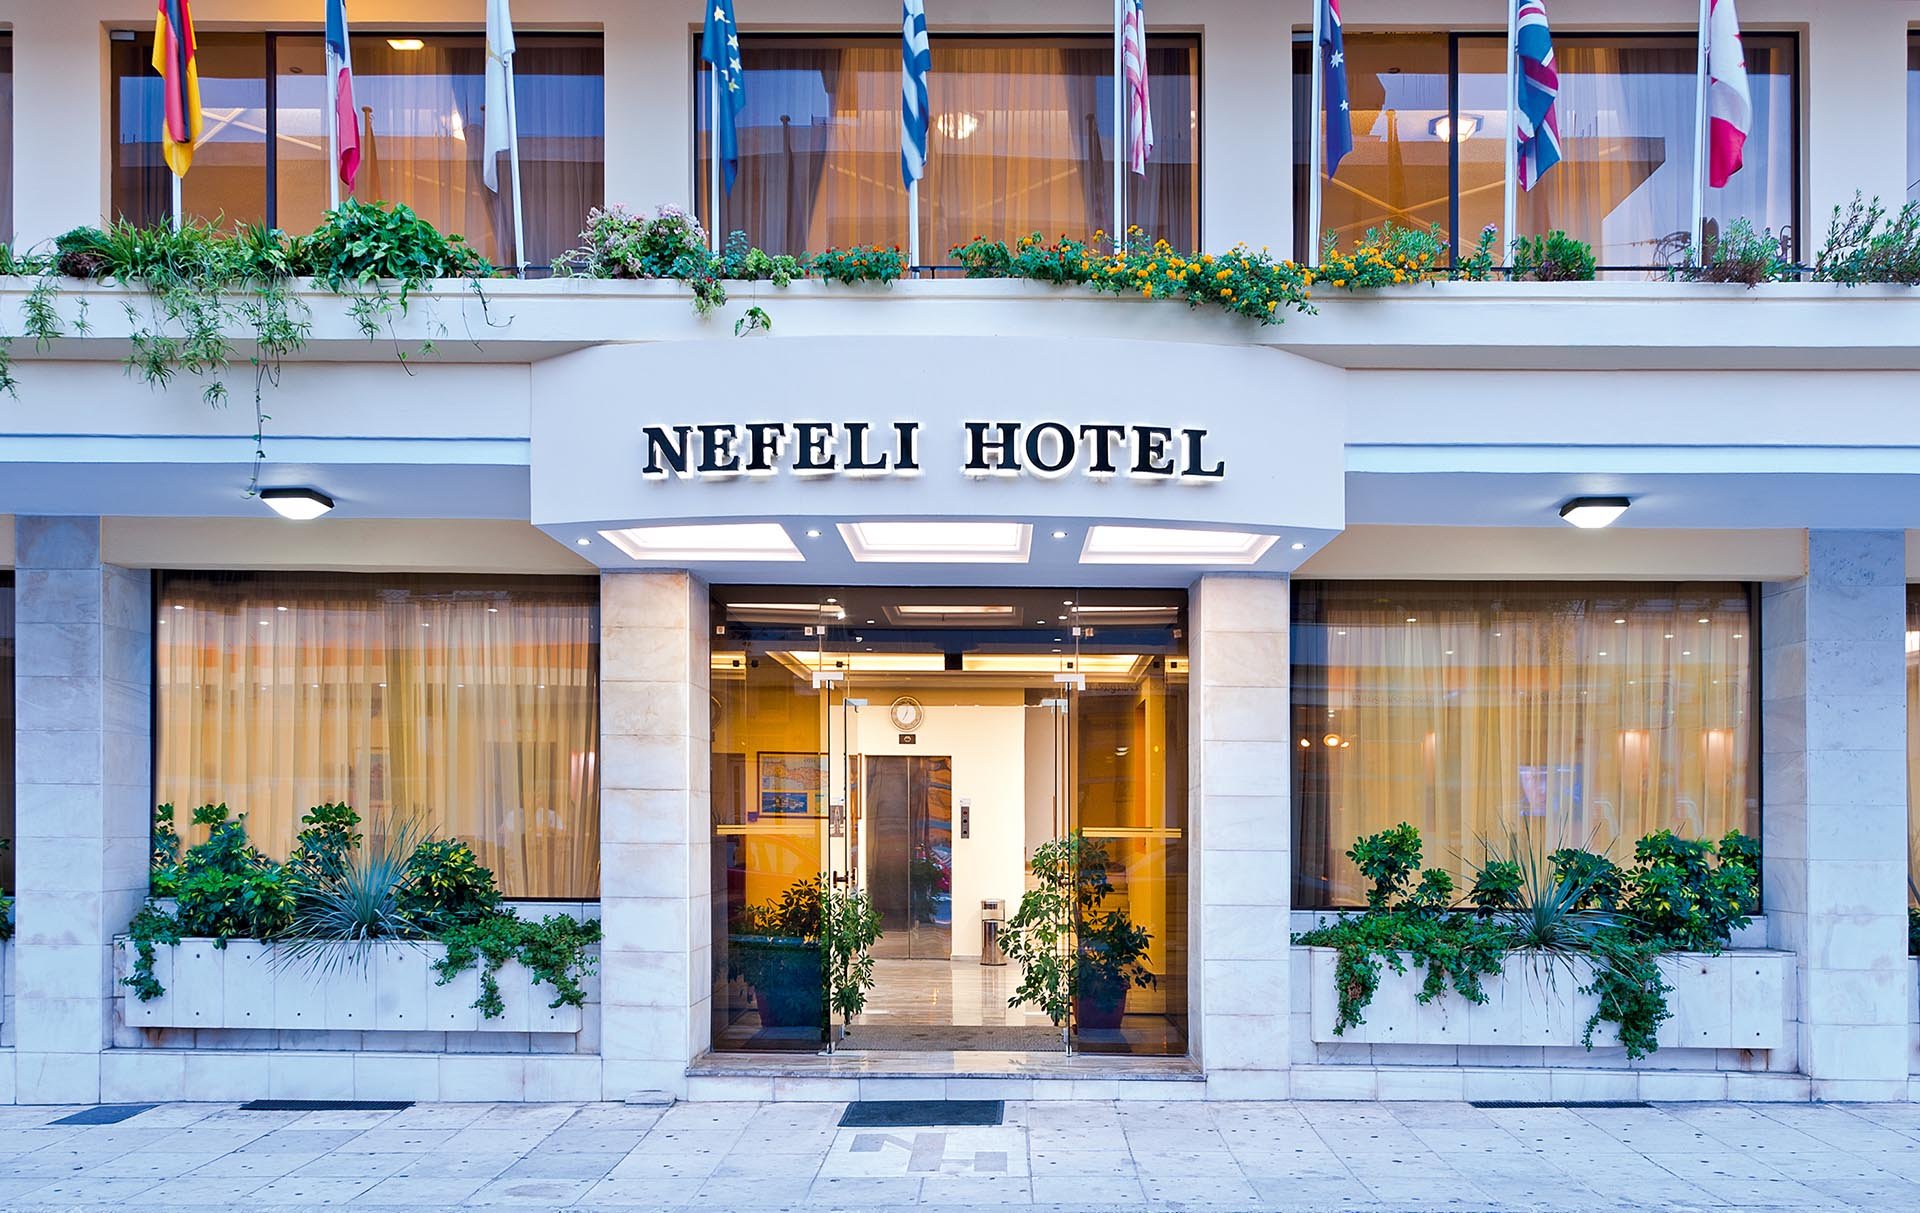 NEFELI HOTEL CHANIA